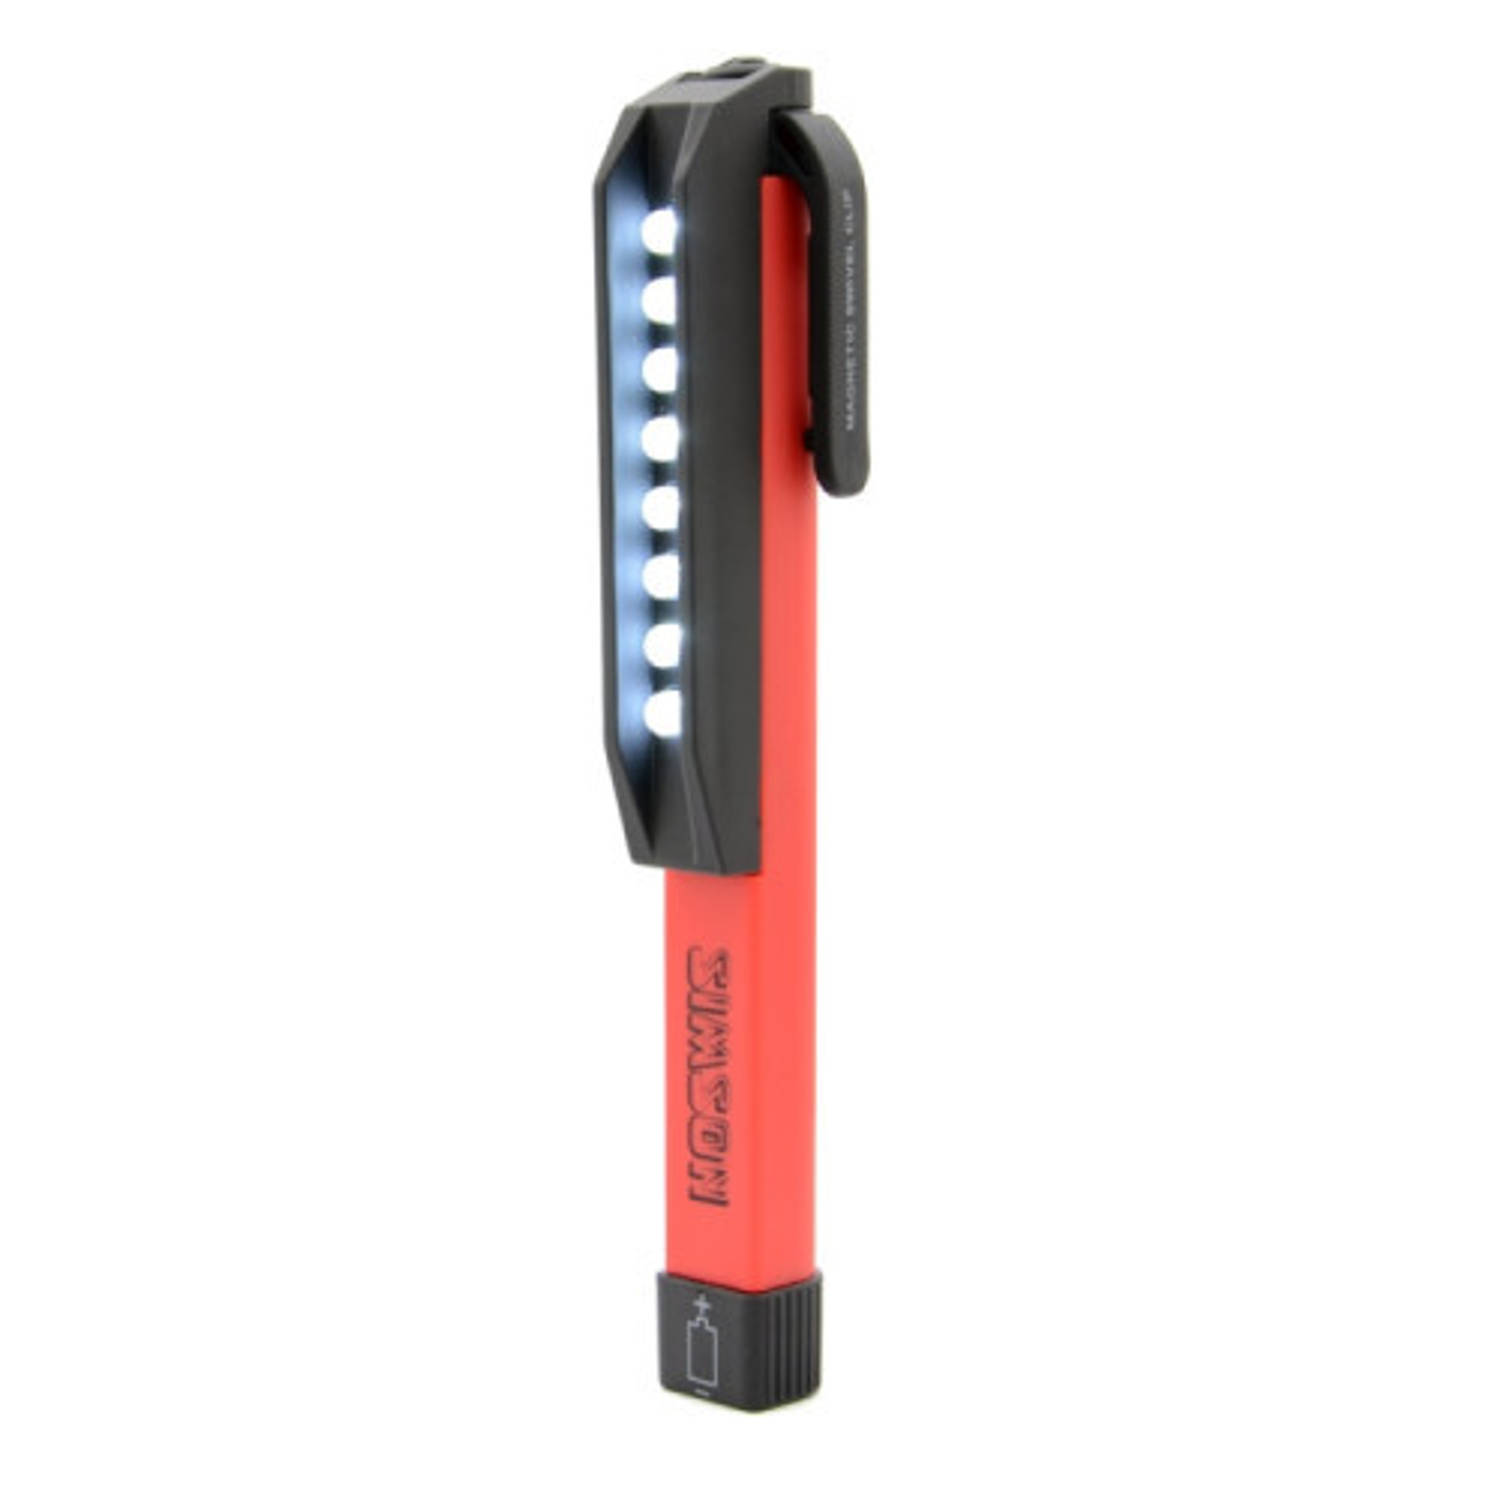 Simson zaklamp met broekclip LED rood/zwart 16 cm